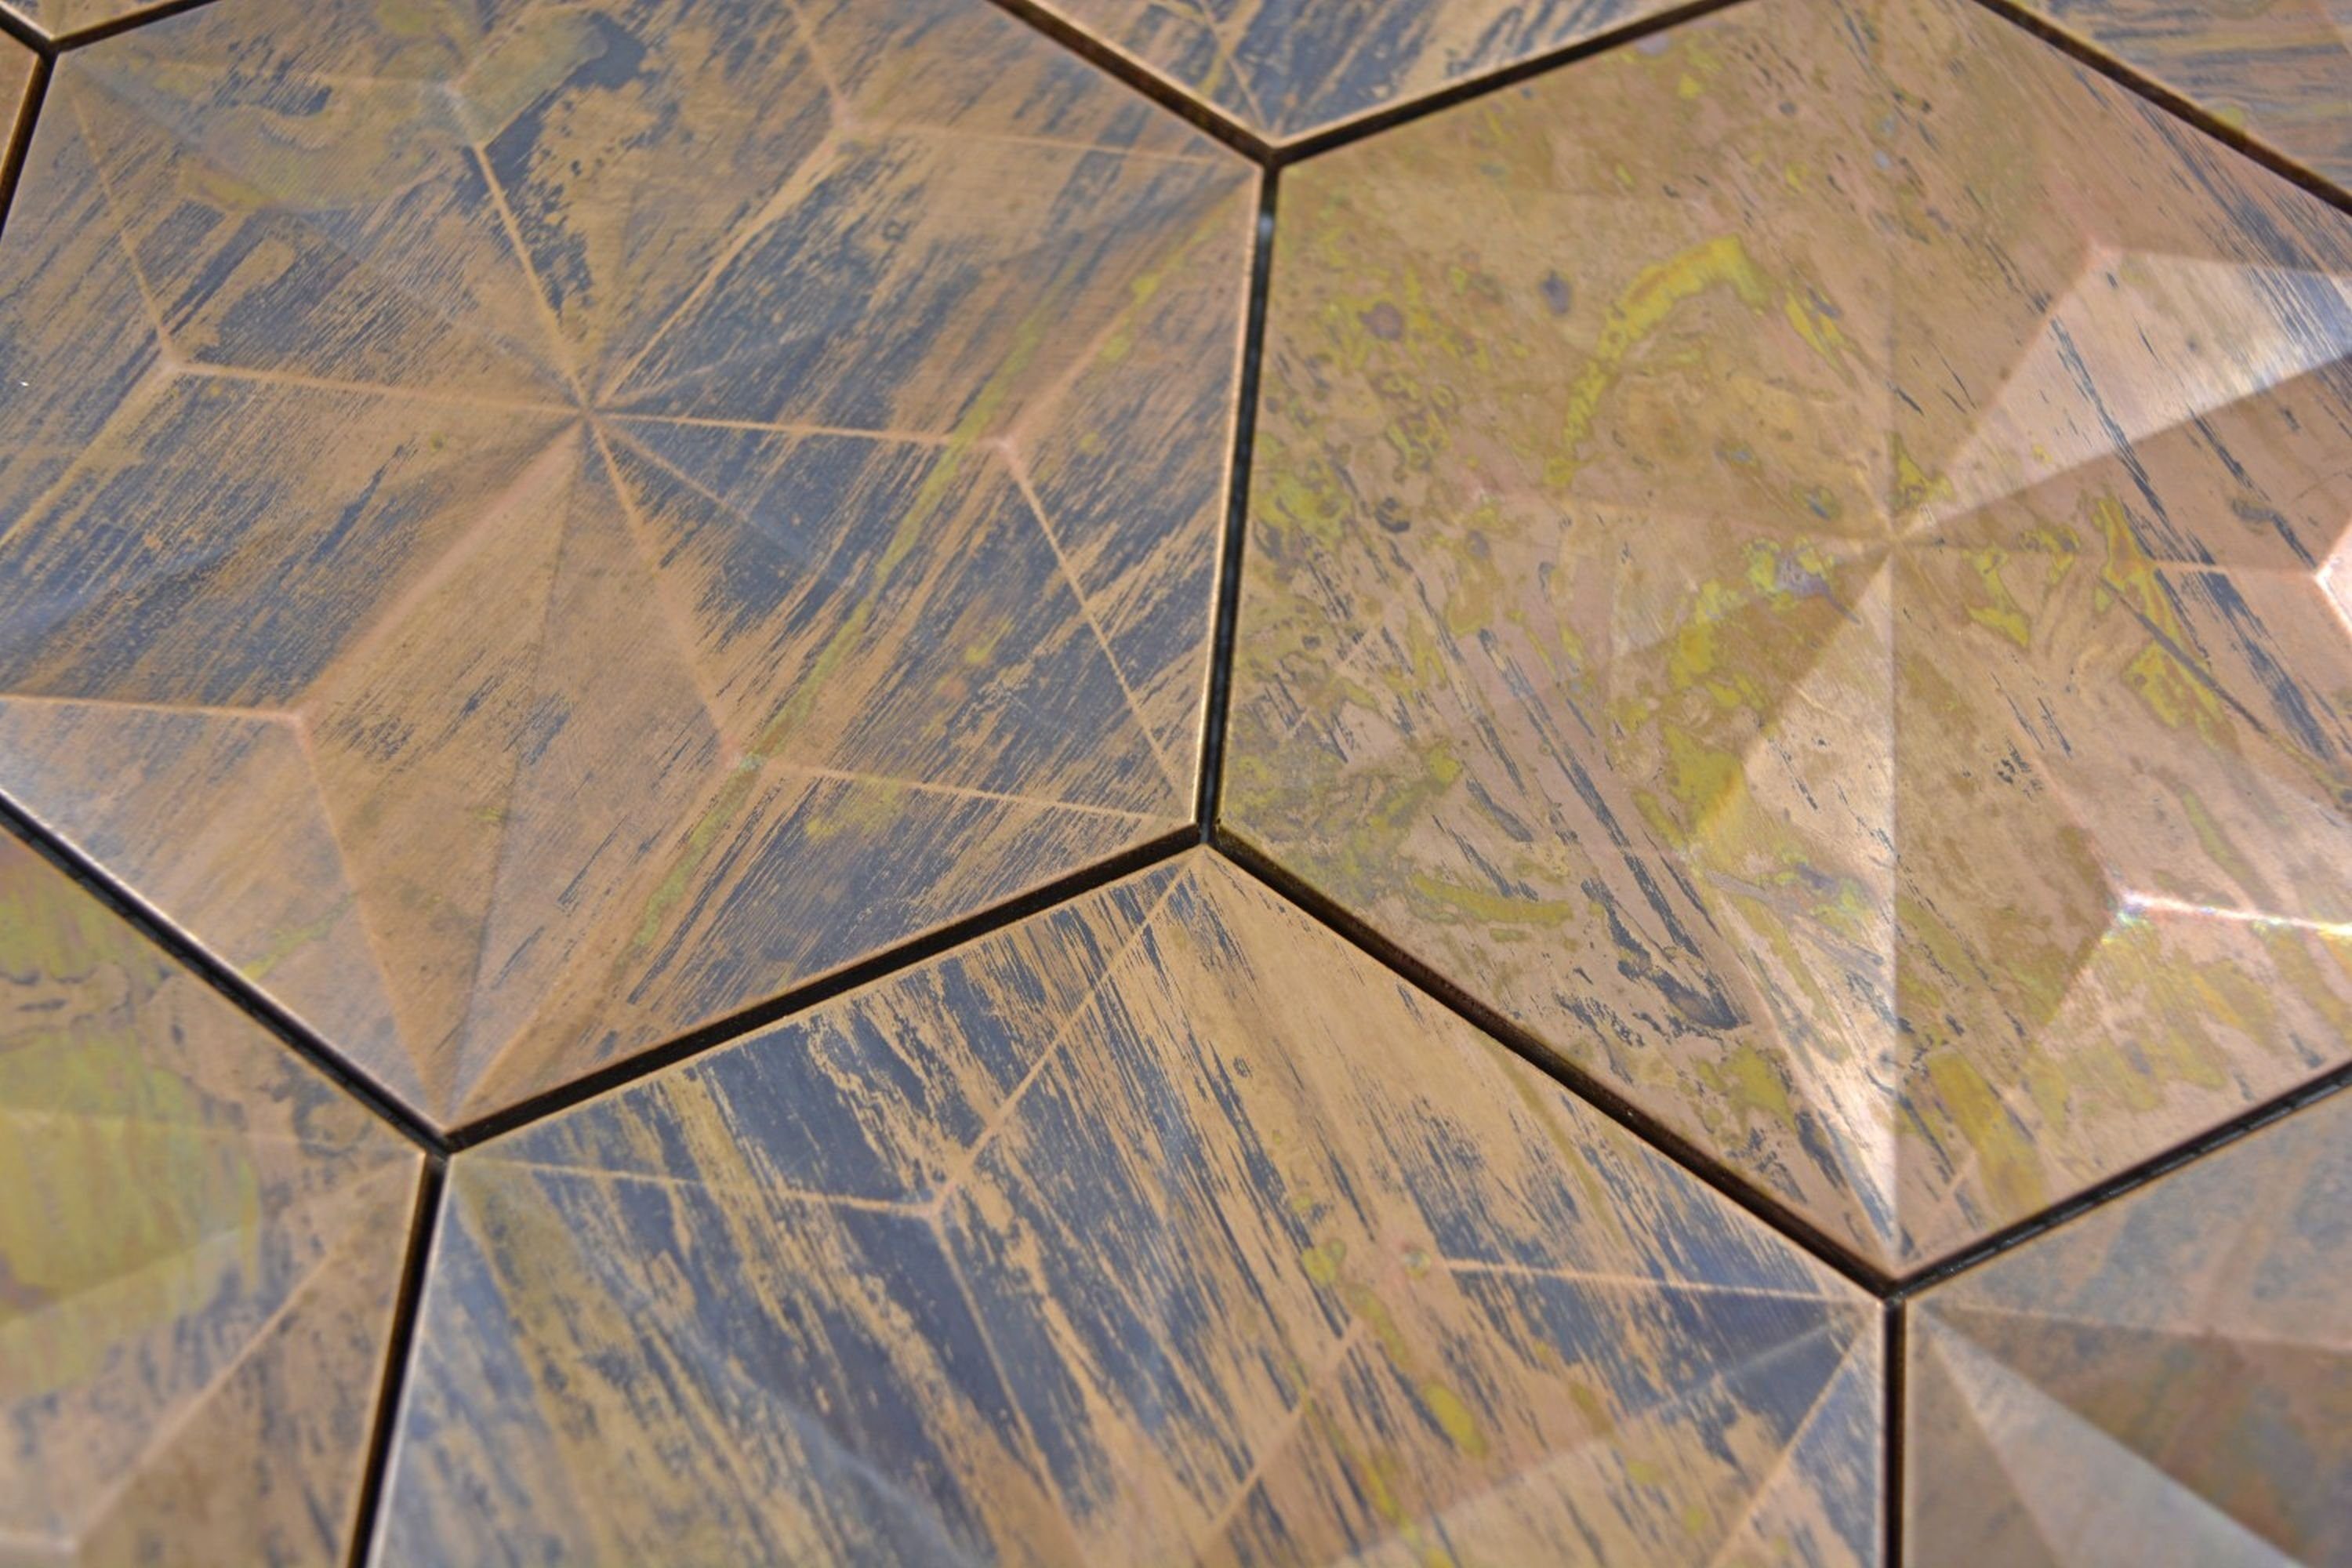 Fliesenspiegel Hexagon 3D Kupfermosaik Küchenrückwand Mosaikfliesen Mosani braun Fliese